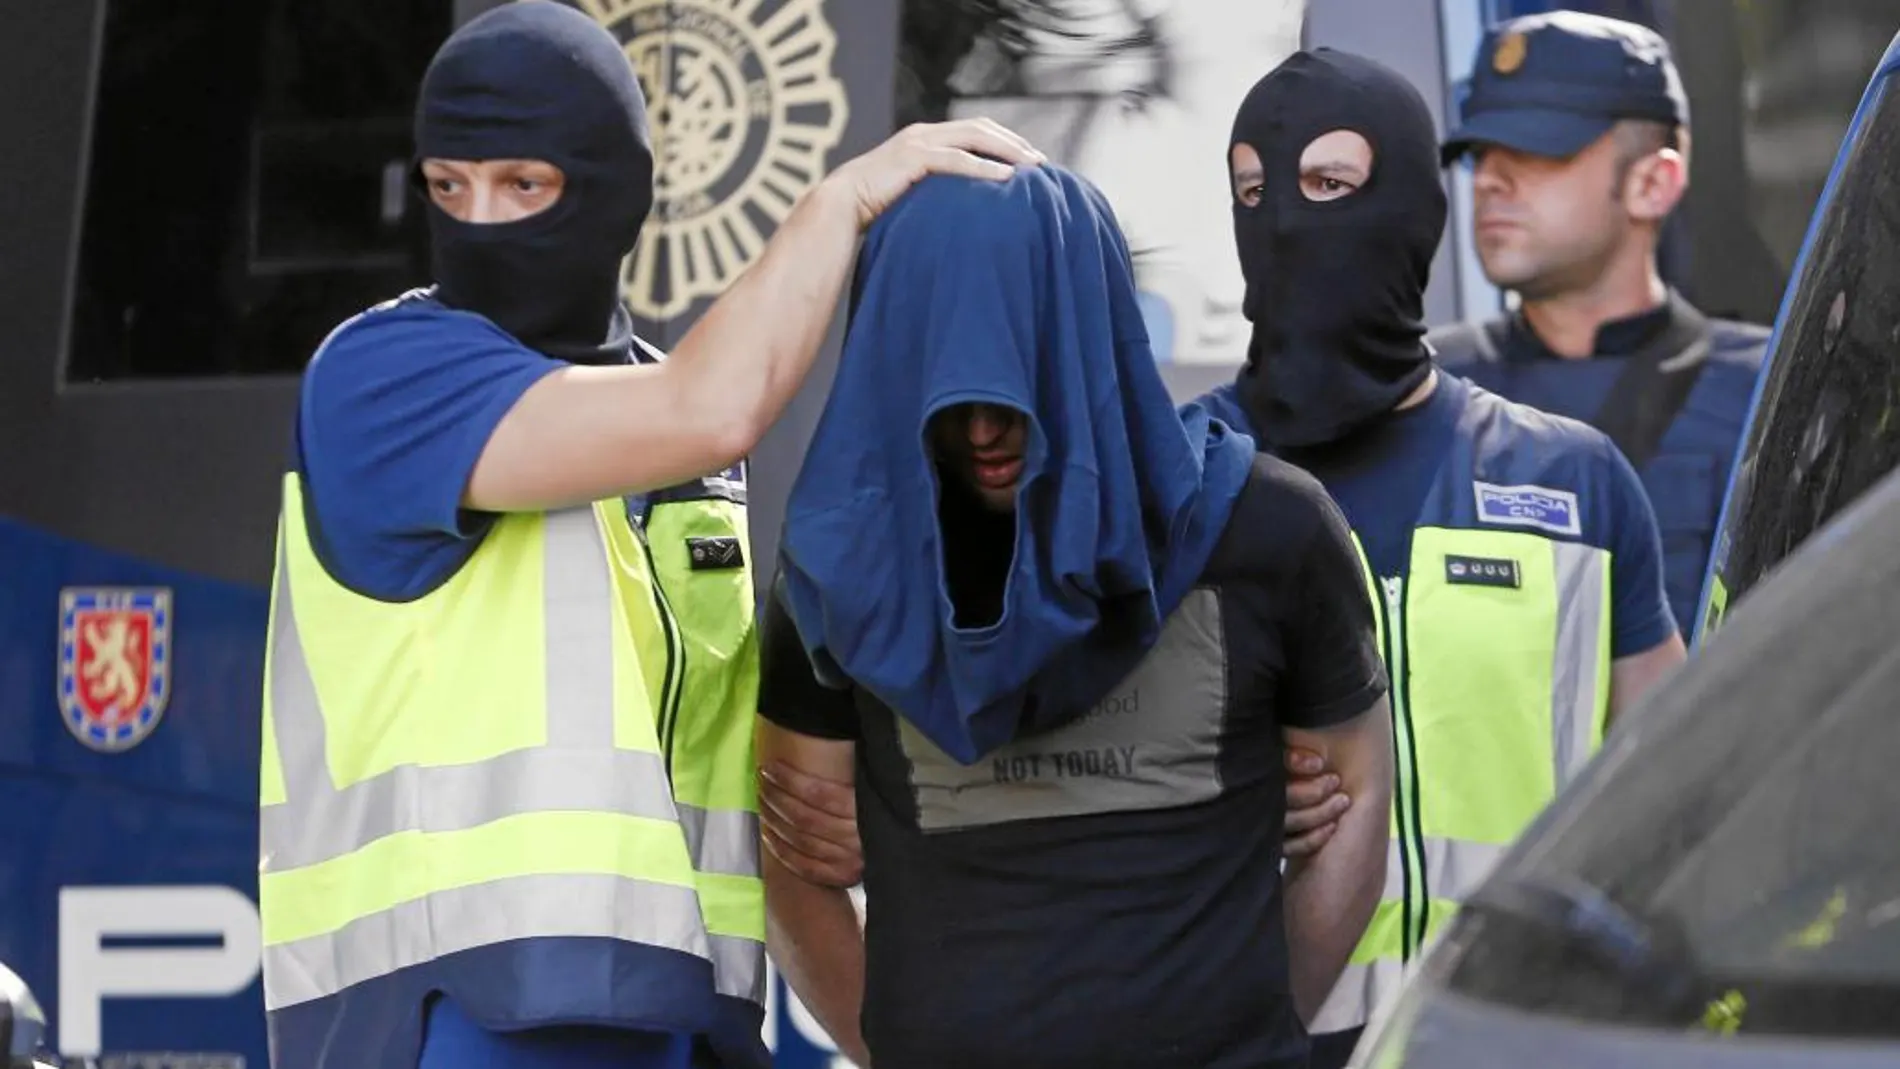 Uno de los yihadistas detenidos ayer en Madrid, en el momento de ser trasladado al furgón policial